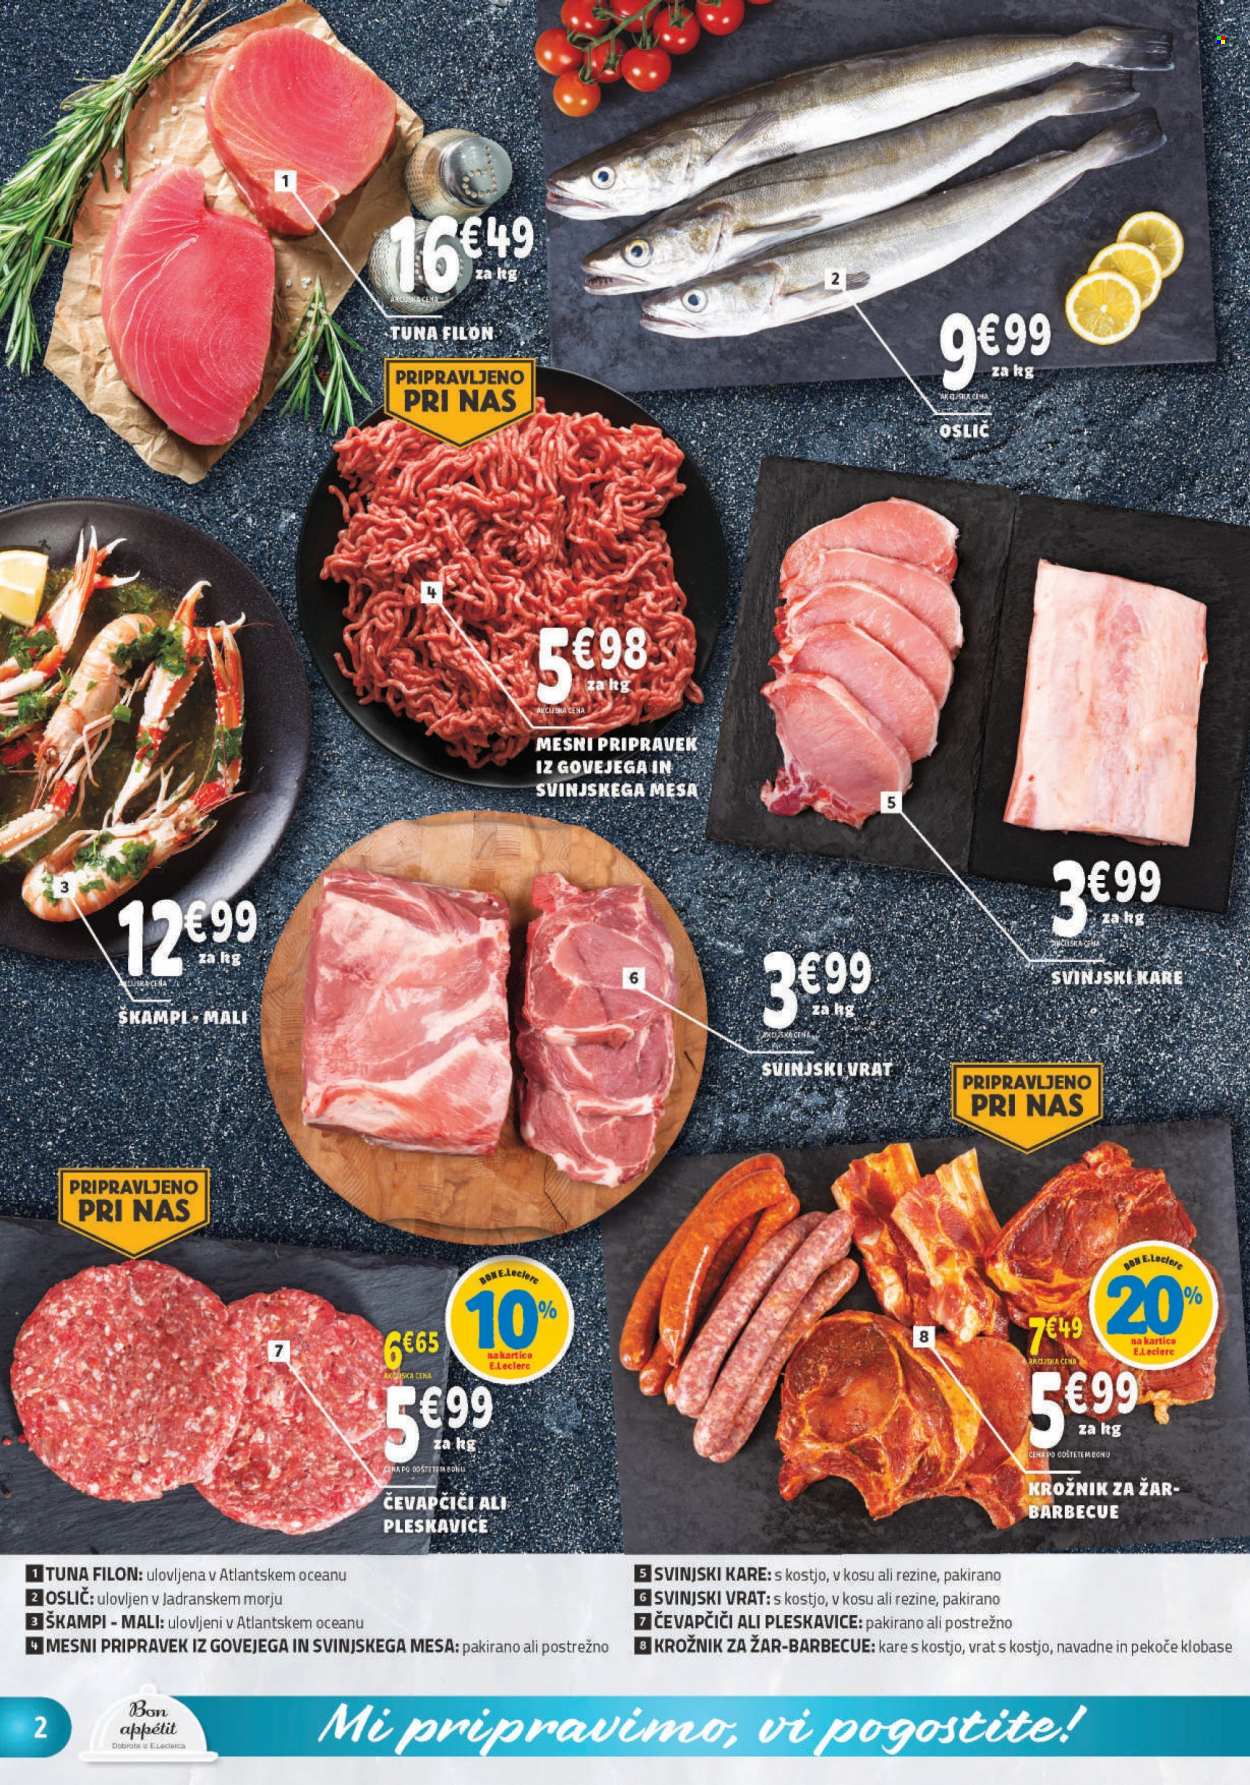 thumbnail - E.Leclerc katalog - 3.8.2022 - 13.8.2022 - Ponudba izdelkov - čevapčiči, pleskavice, kare, svinjski kare, svinjski vrat, svinjsko meso, oslič, riba, tuna, klobasa, krožnik, grill. Stran 2.